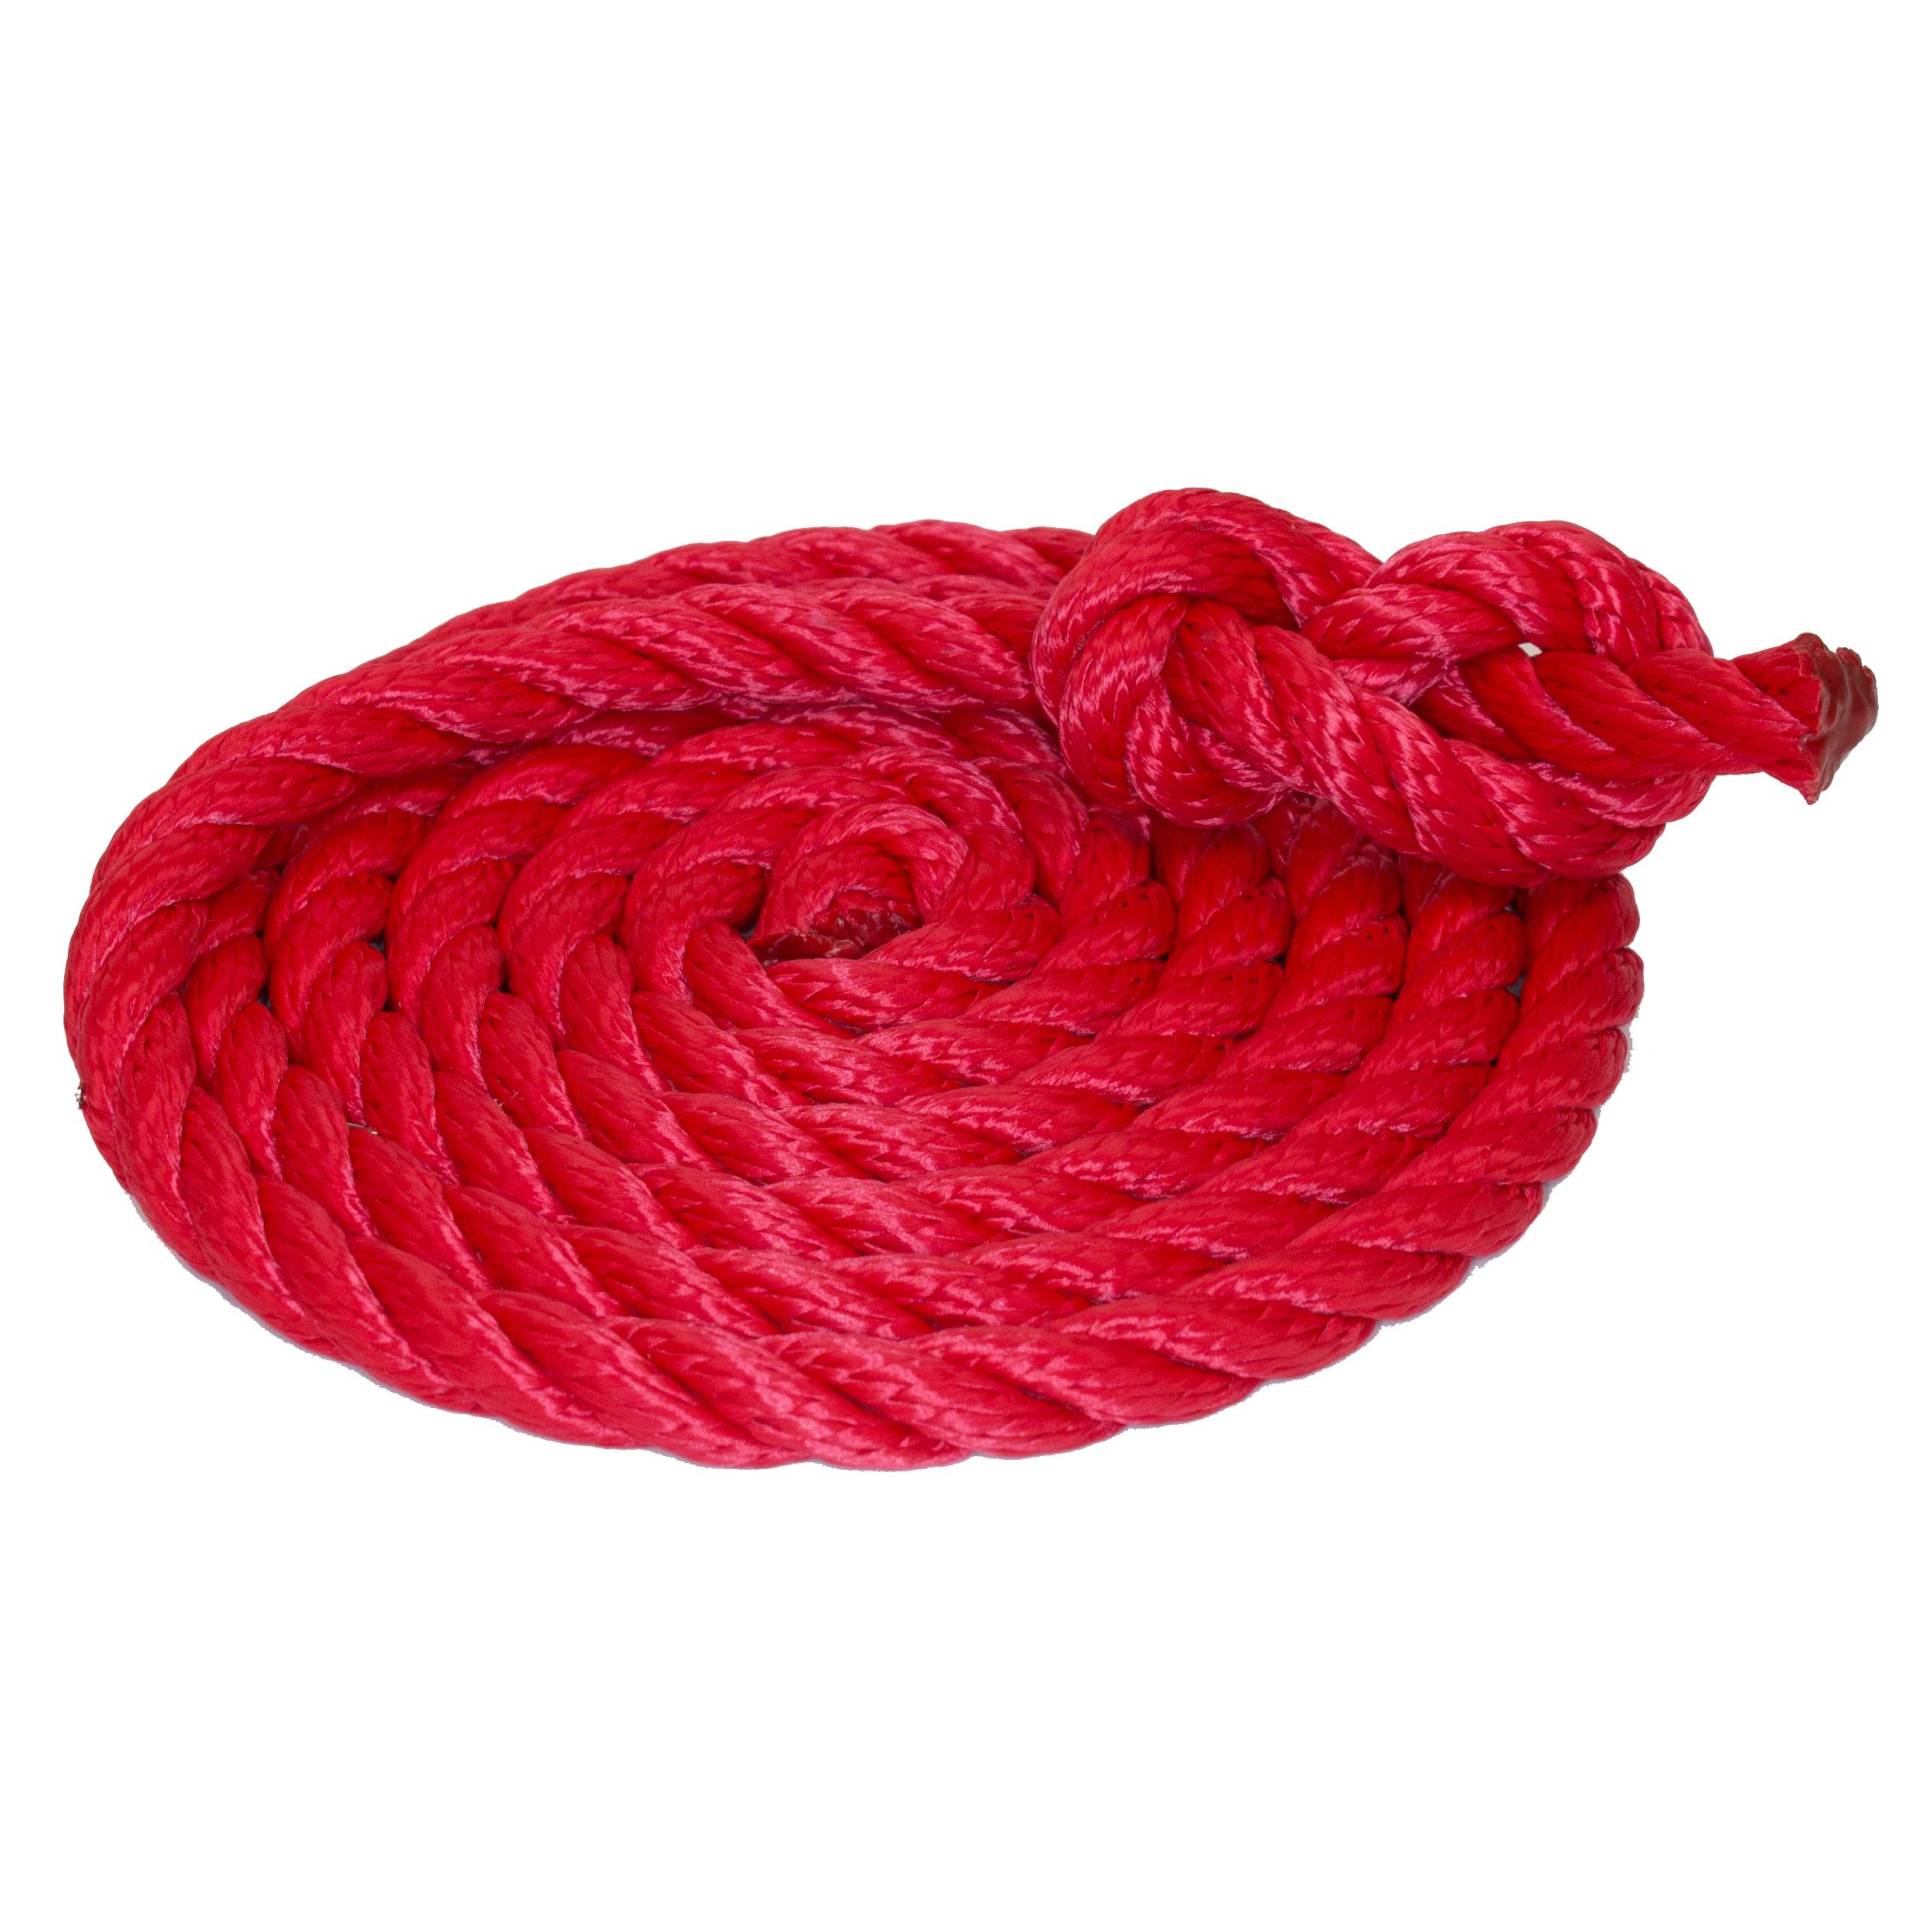 Tauwerk 10mm - Farbe: rot 3-litzig gedreht Leine Schnur Festmacher Rope Tau Seil Allzweckseil Reepschnur Lirolen-Tauwerk PP-Multifil, 3-schäftig gedreht (Länge 30mtr.) von HAMBURGER TAUWERK-FABRIK EST. 1901